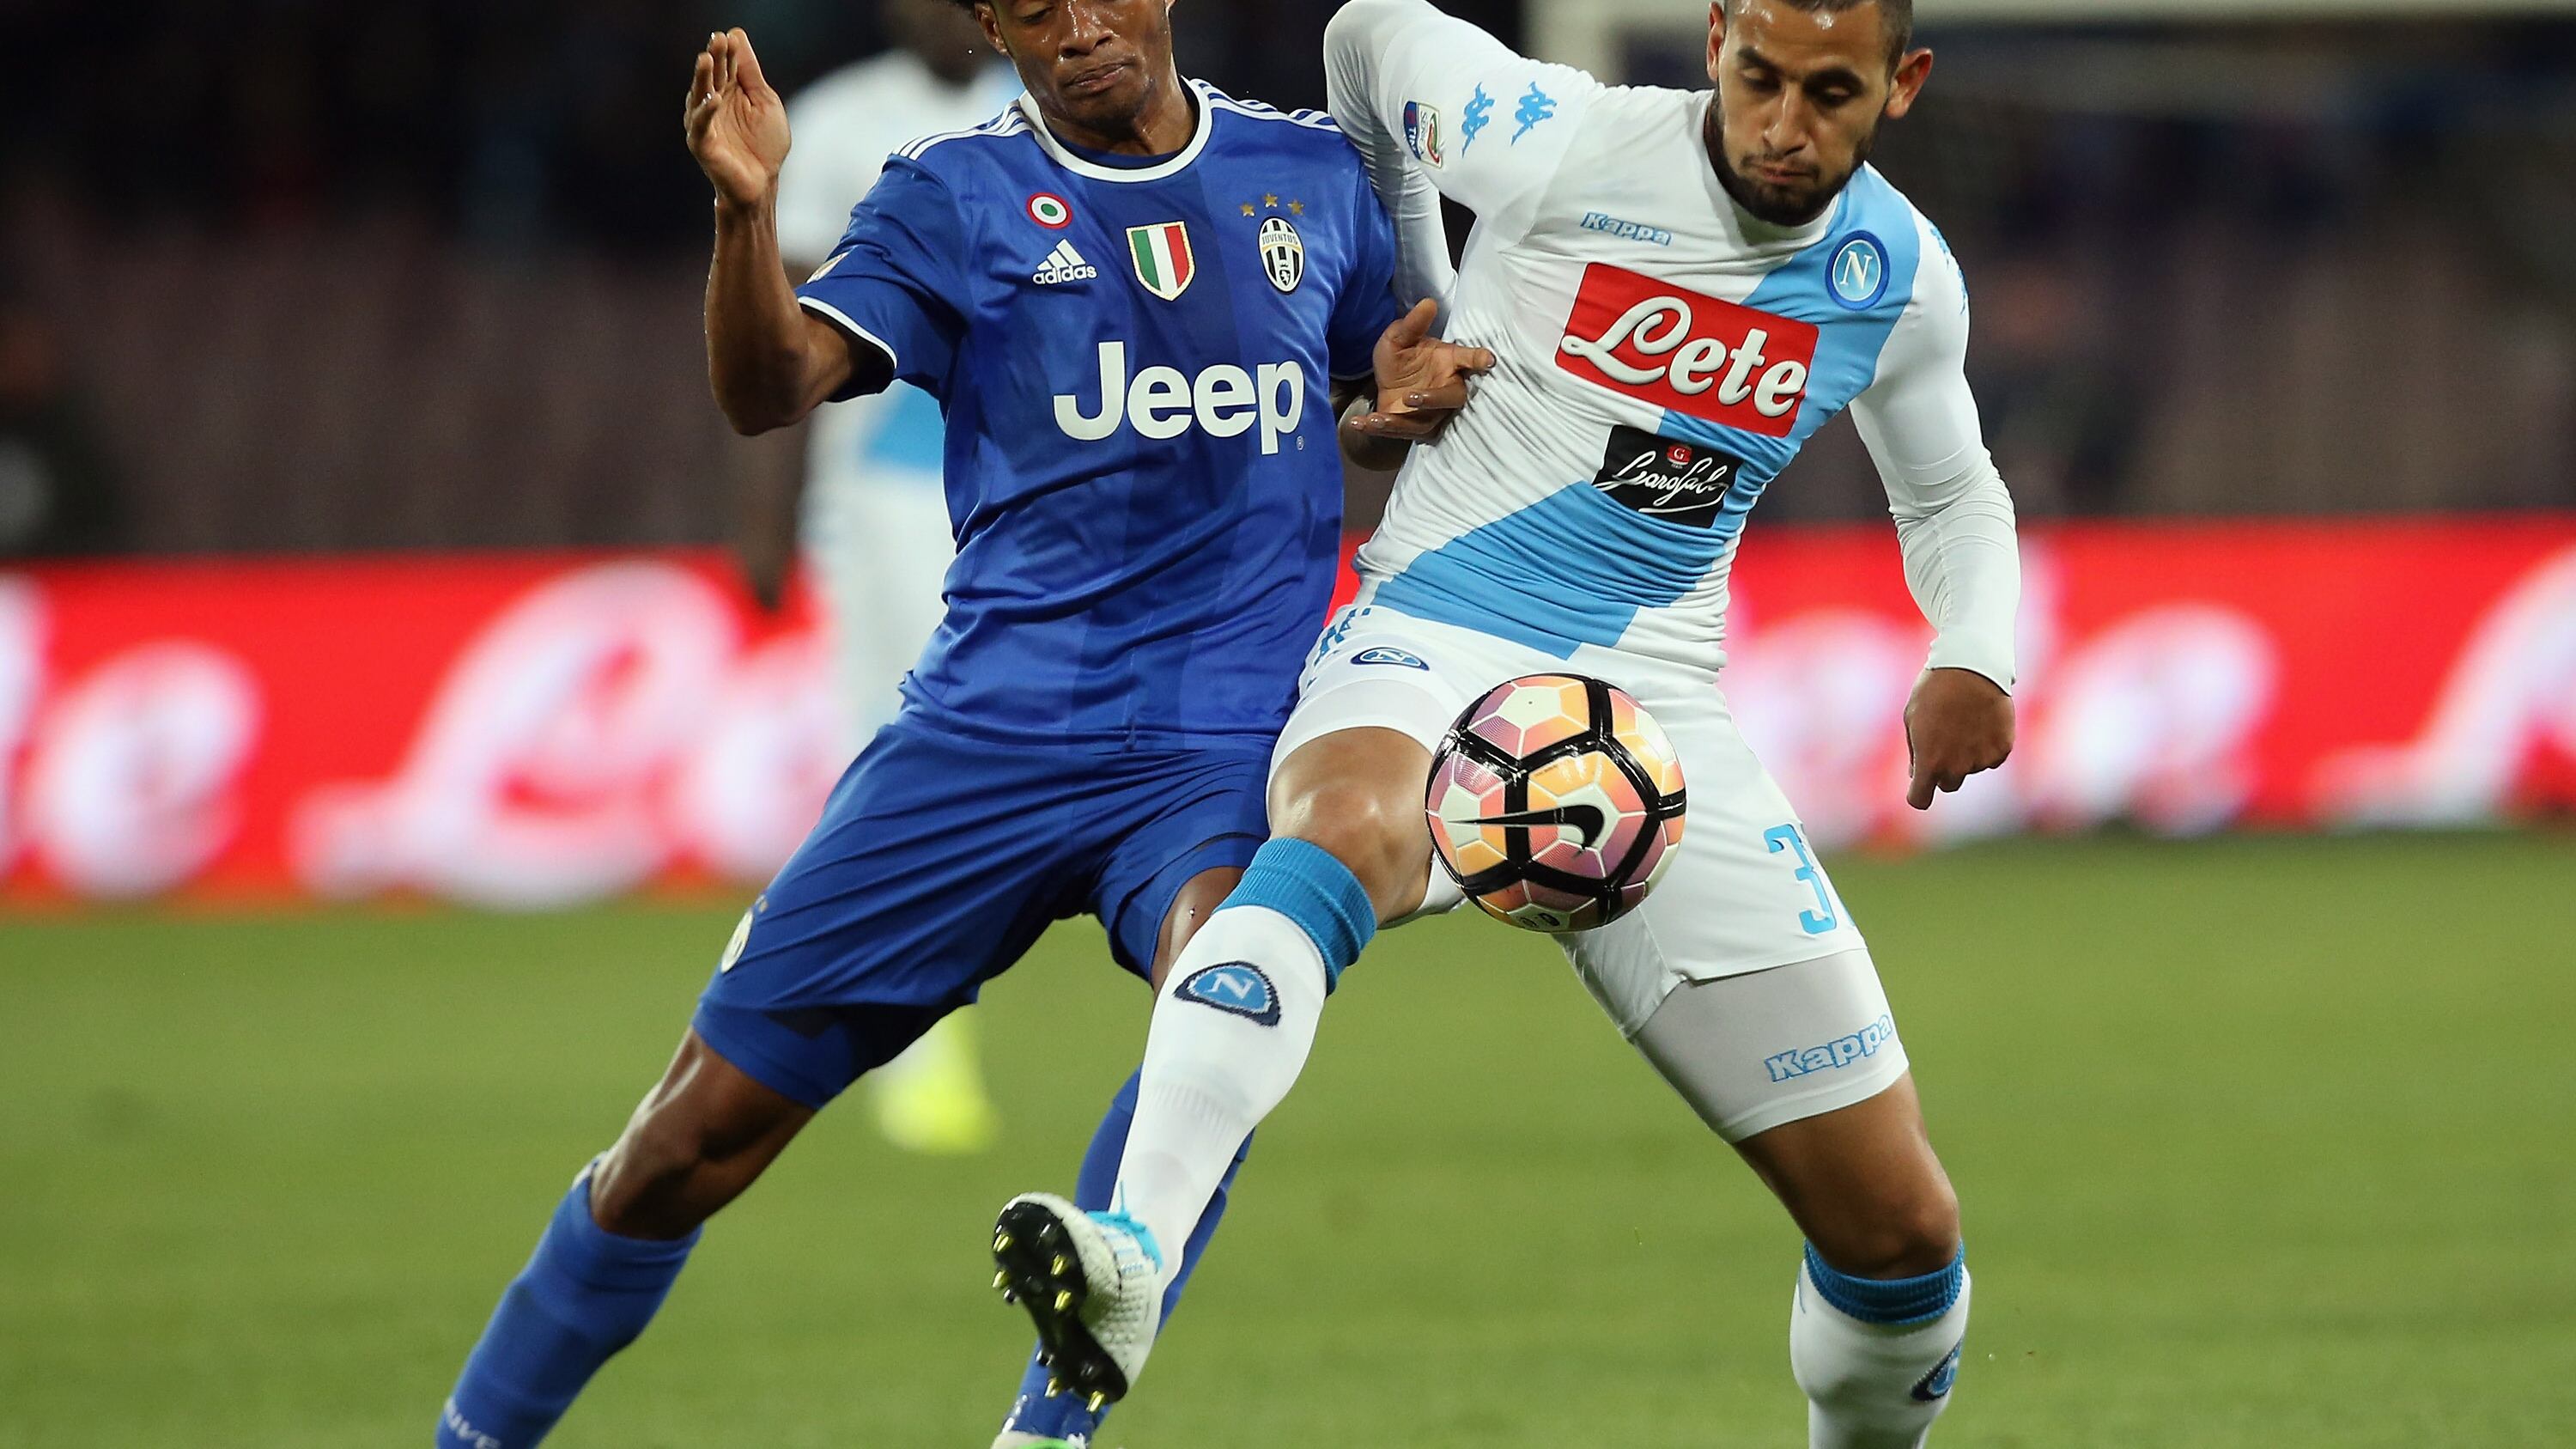 Napoli 1-1 Juventus Serie A 2017